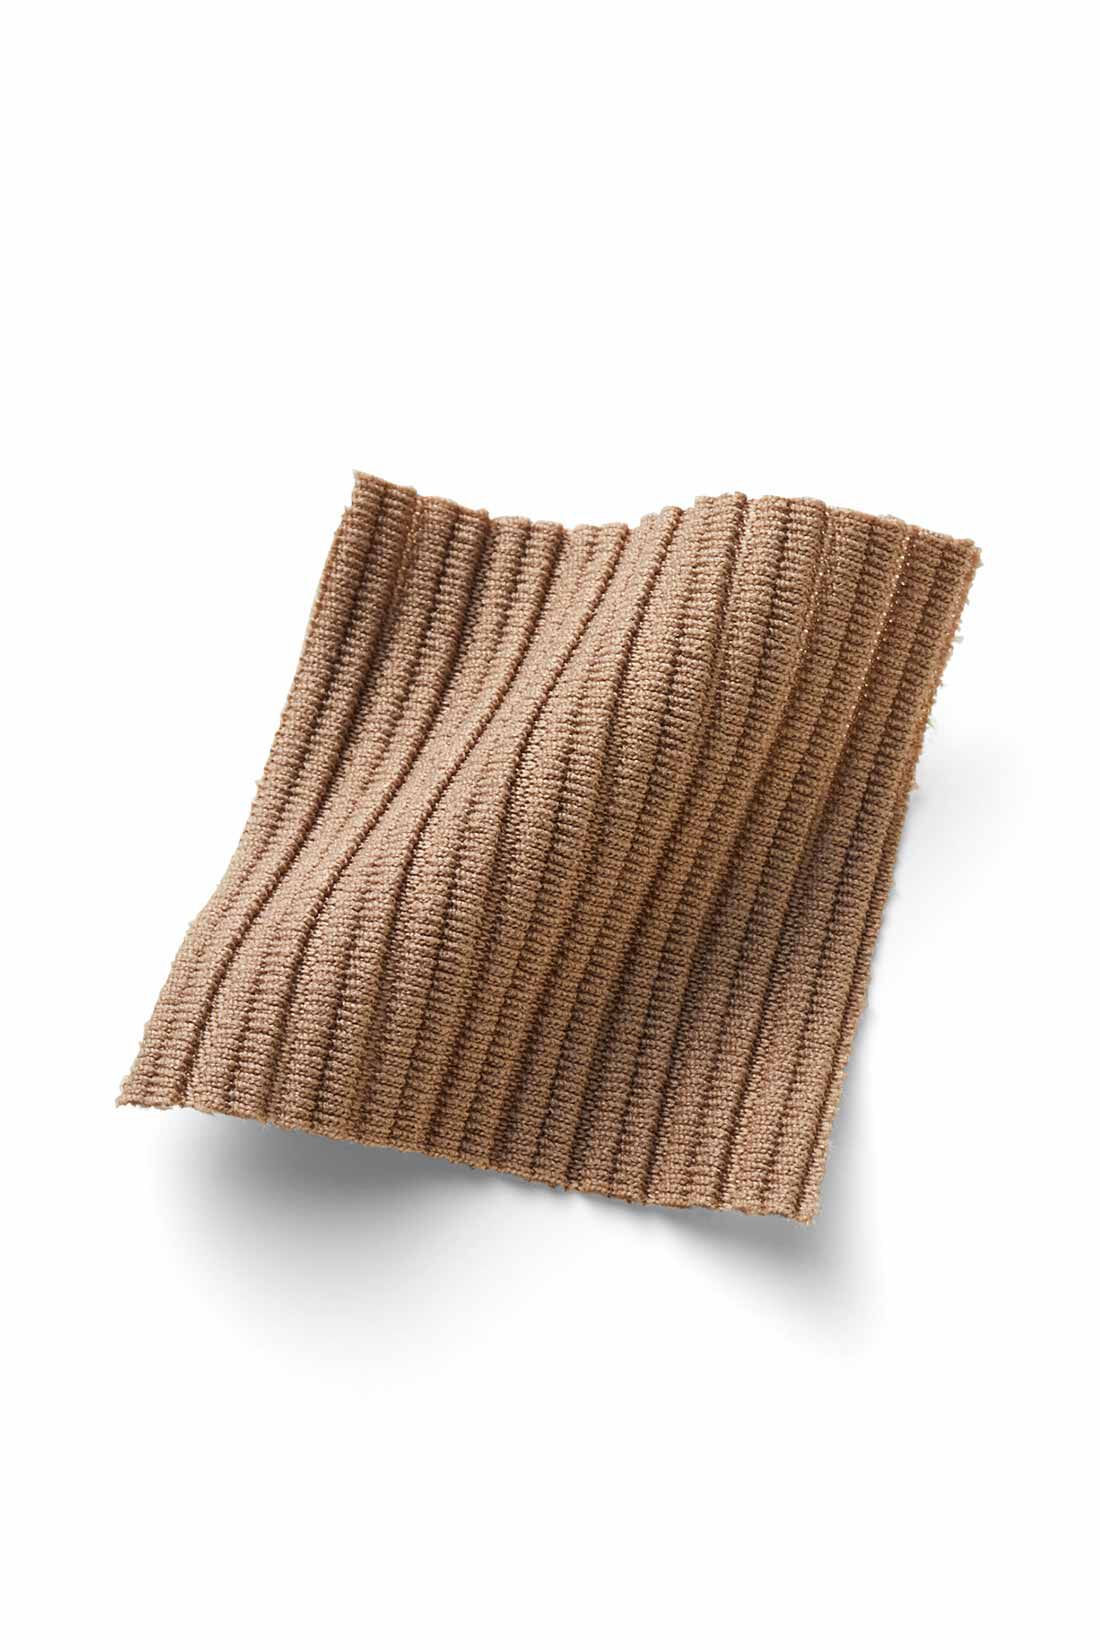 IEDIT[イディット]　ニットライクなリップルカットソー素材で仕立てた らくちんきれいなIラインスカートの会|リブニットのような縦ラインを描く、やや張り感のあるリップルカットソー素材。